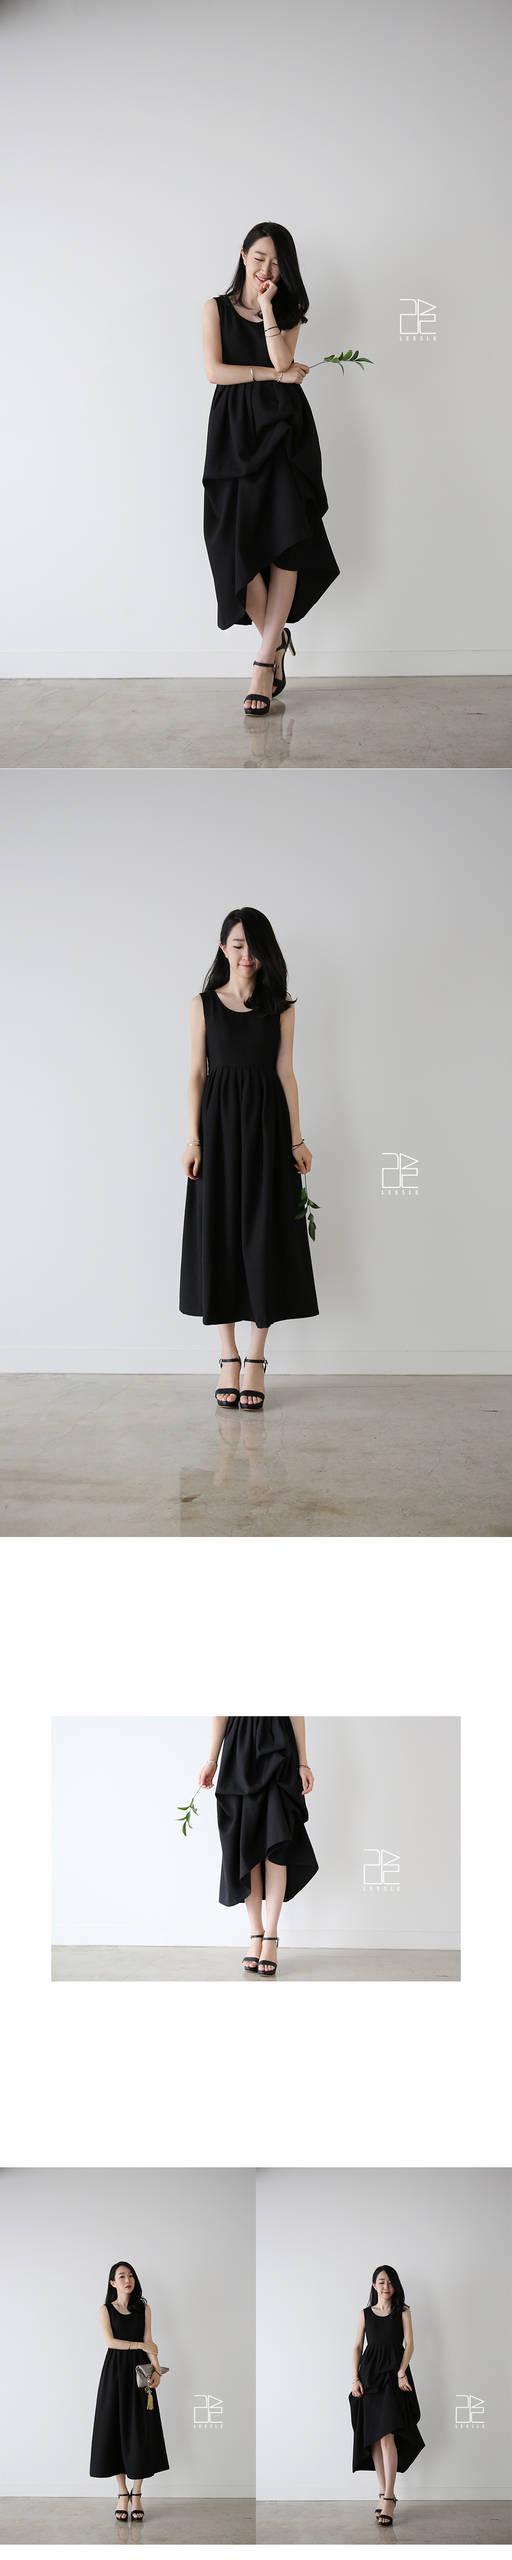 รูปภาพ:http://leesle.com/web/springfall/black_unbal_dress.jpg